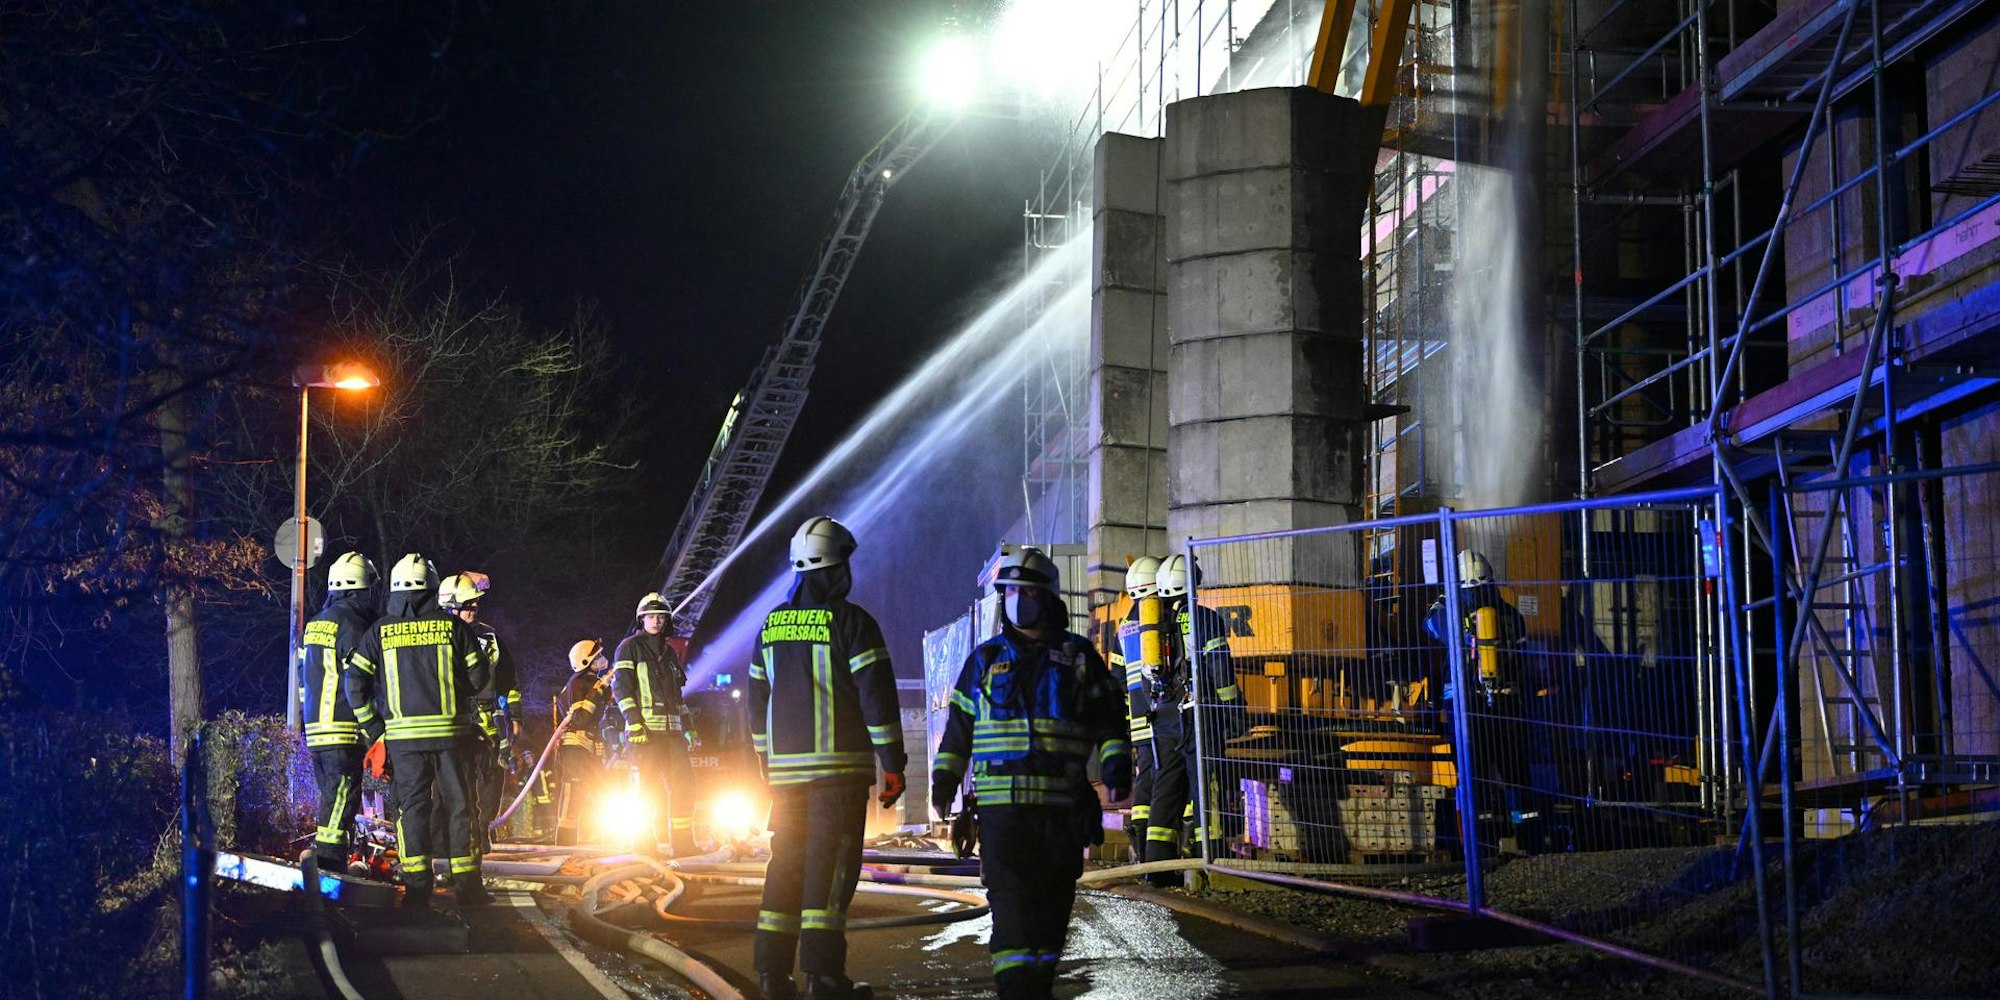 Der Dachstuhl des Rohbaus stand voll in Flammen als die Feuerwehr am Einsatzort eintraf.